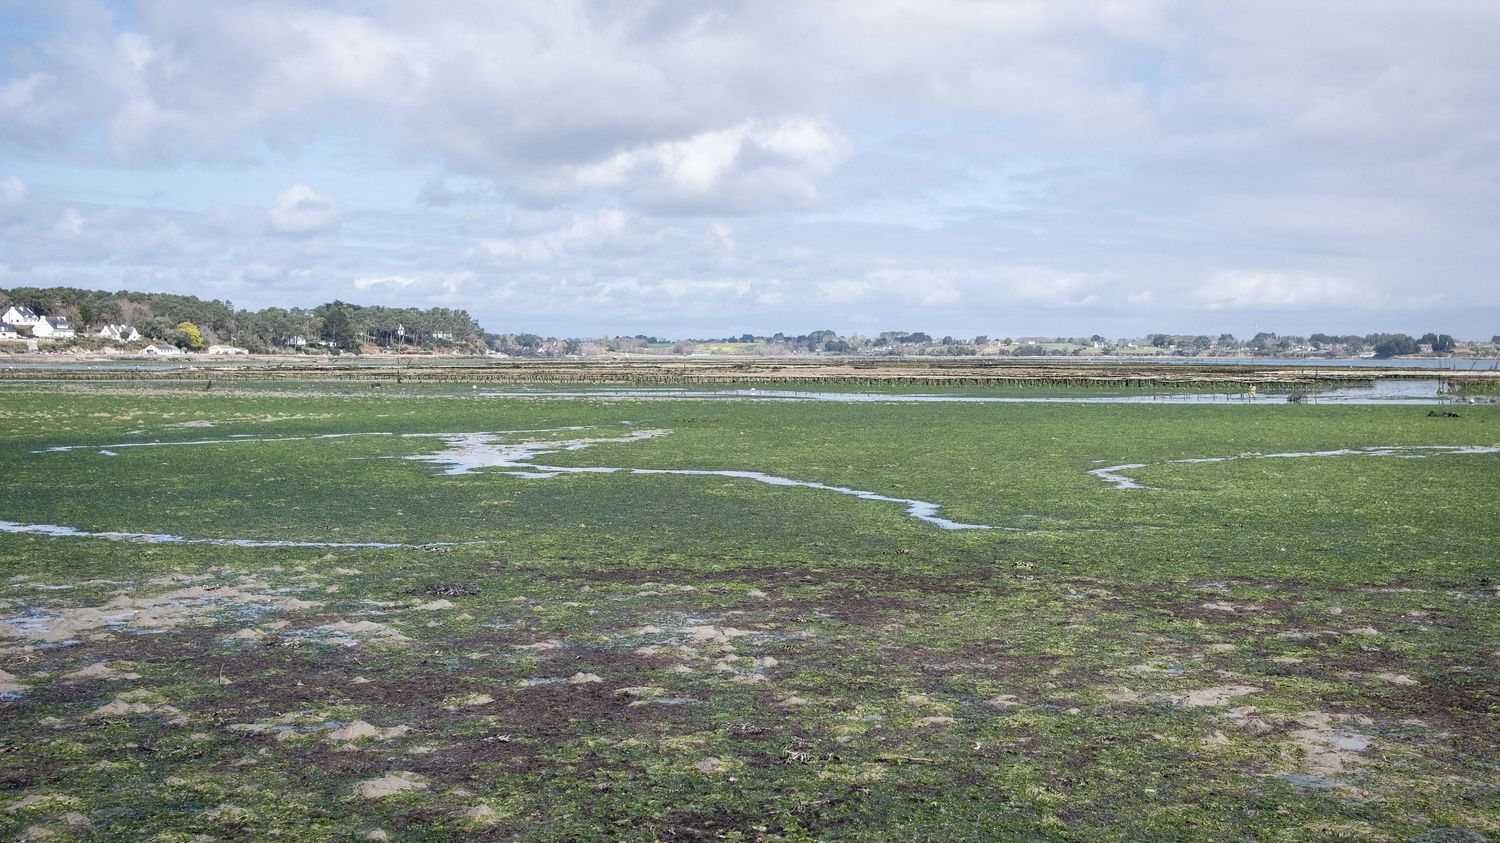 Bretagne : la justice ordonne à l'Etat de renforcer la lutte contre les marées vertes